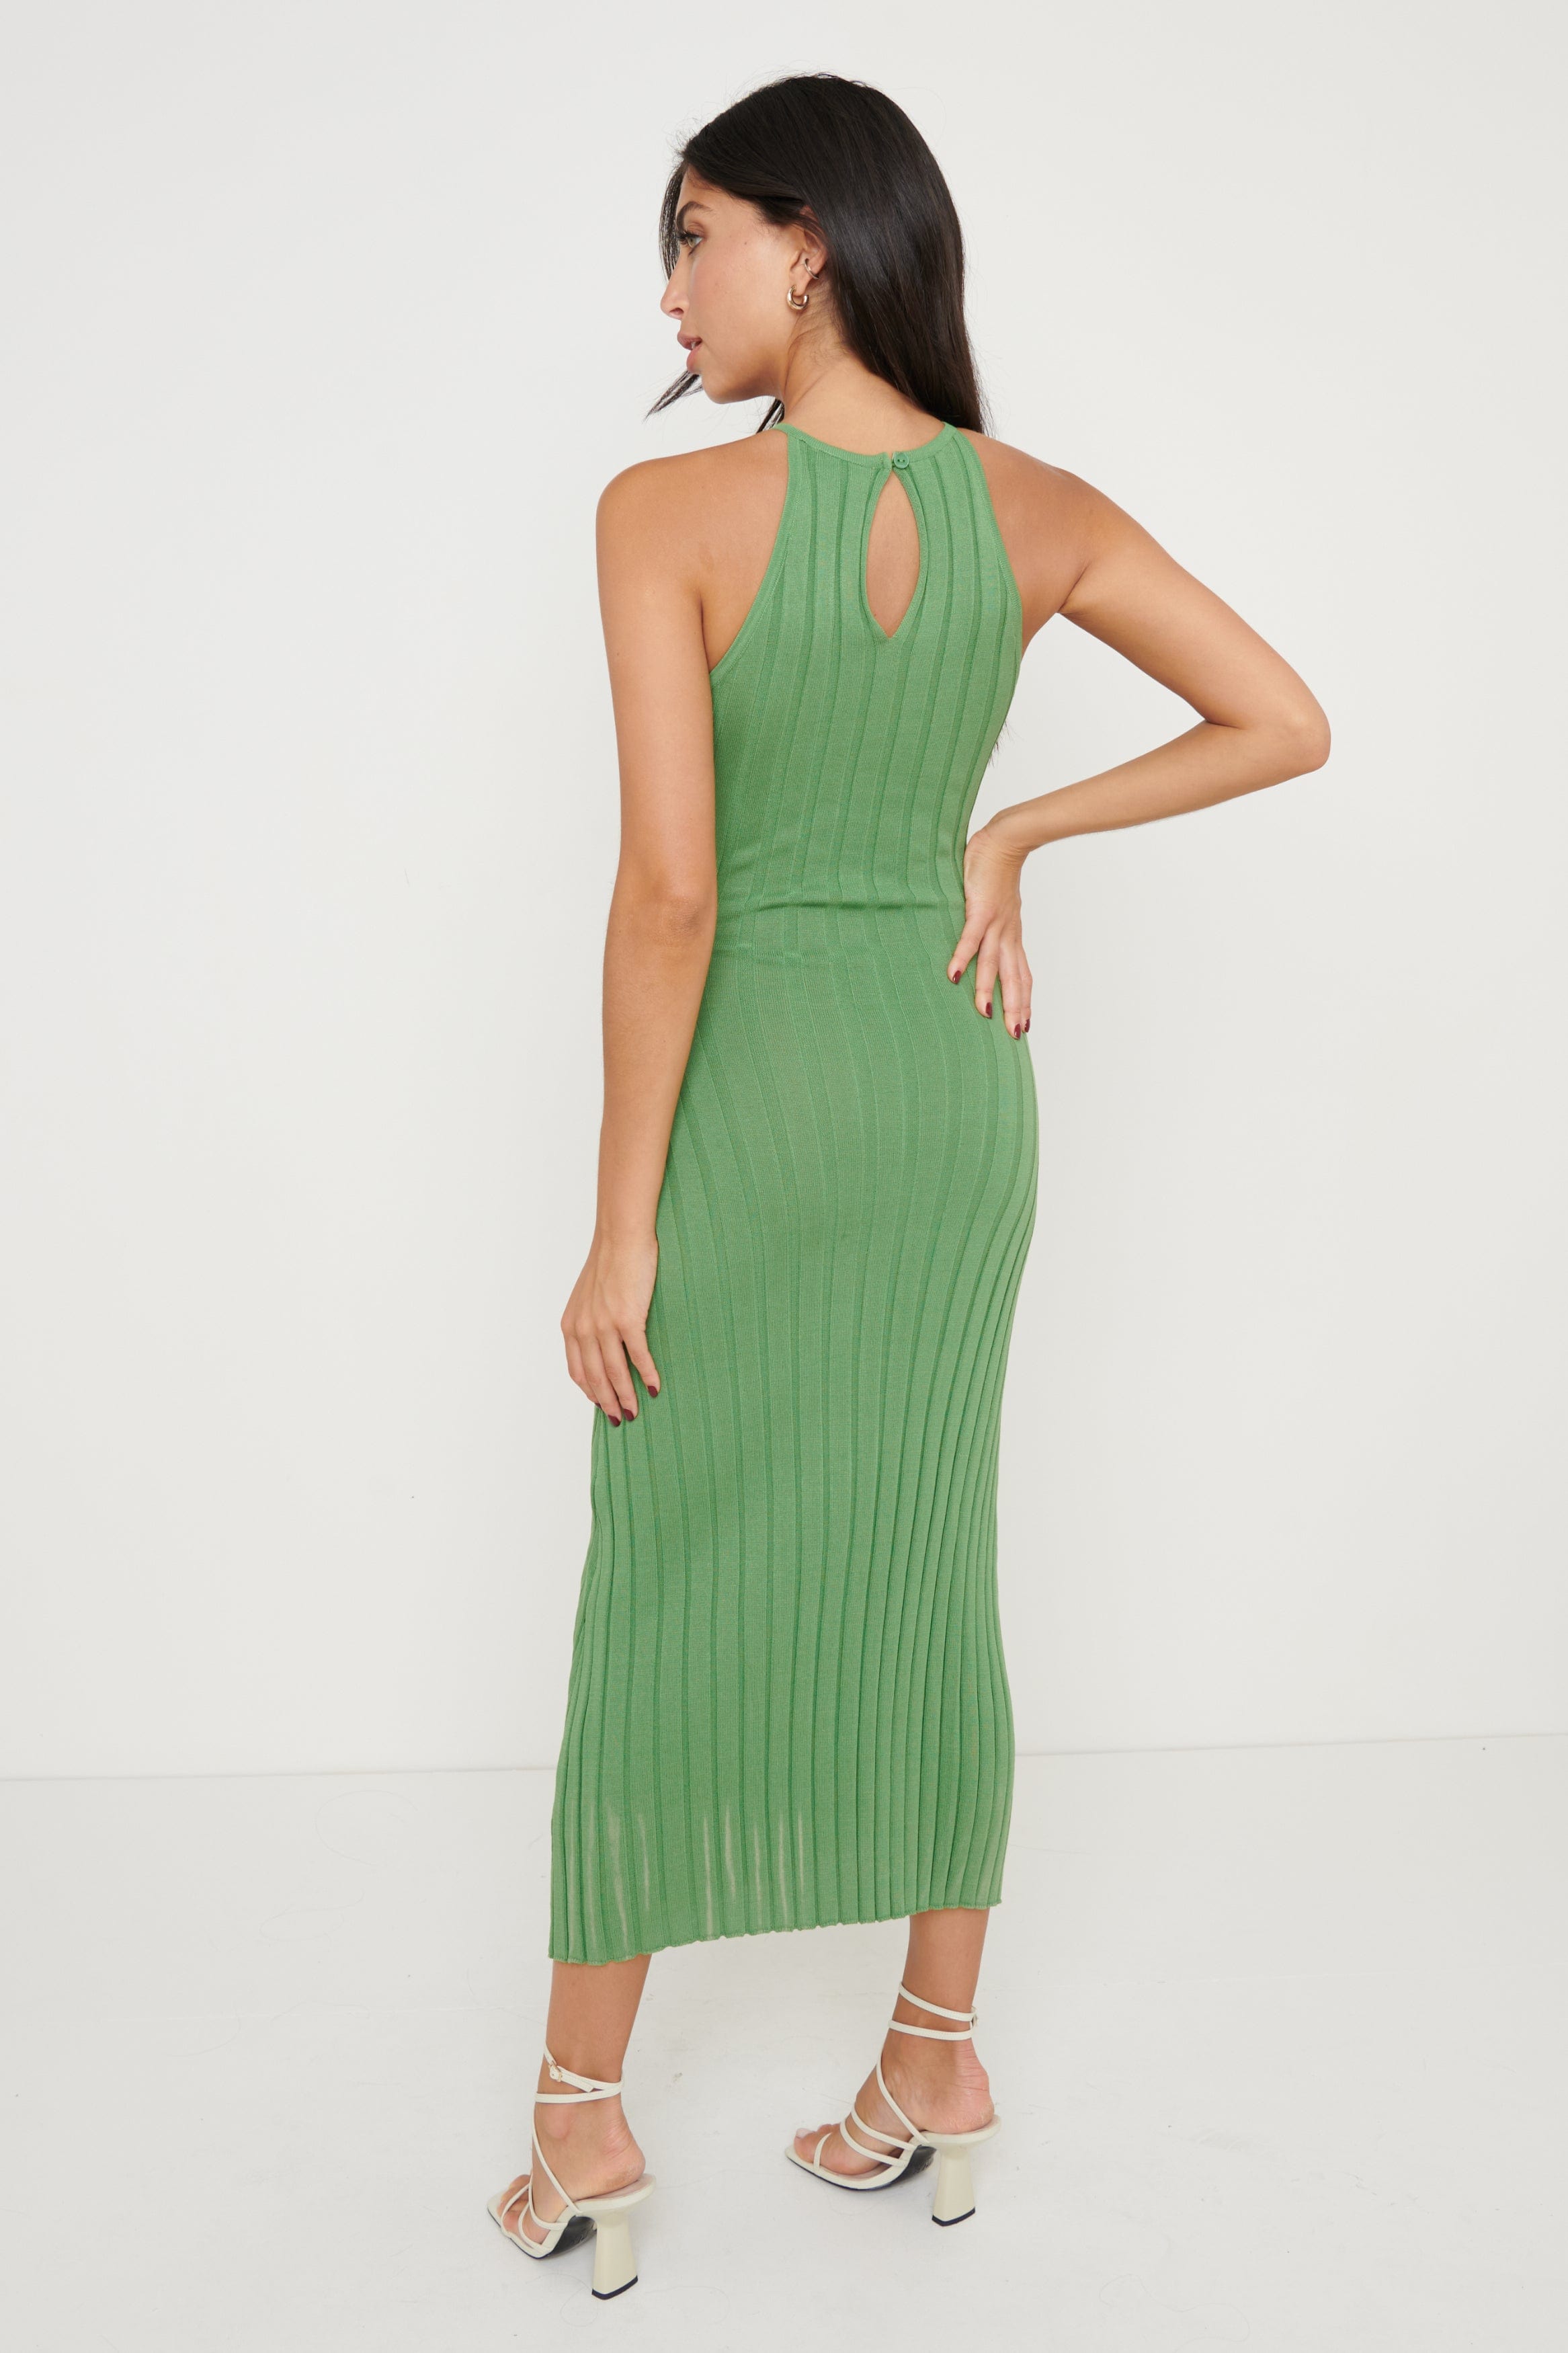 Isla Cut Out Midaxi Knit Dress - Green